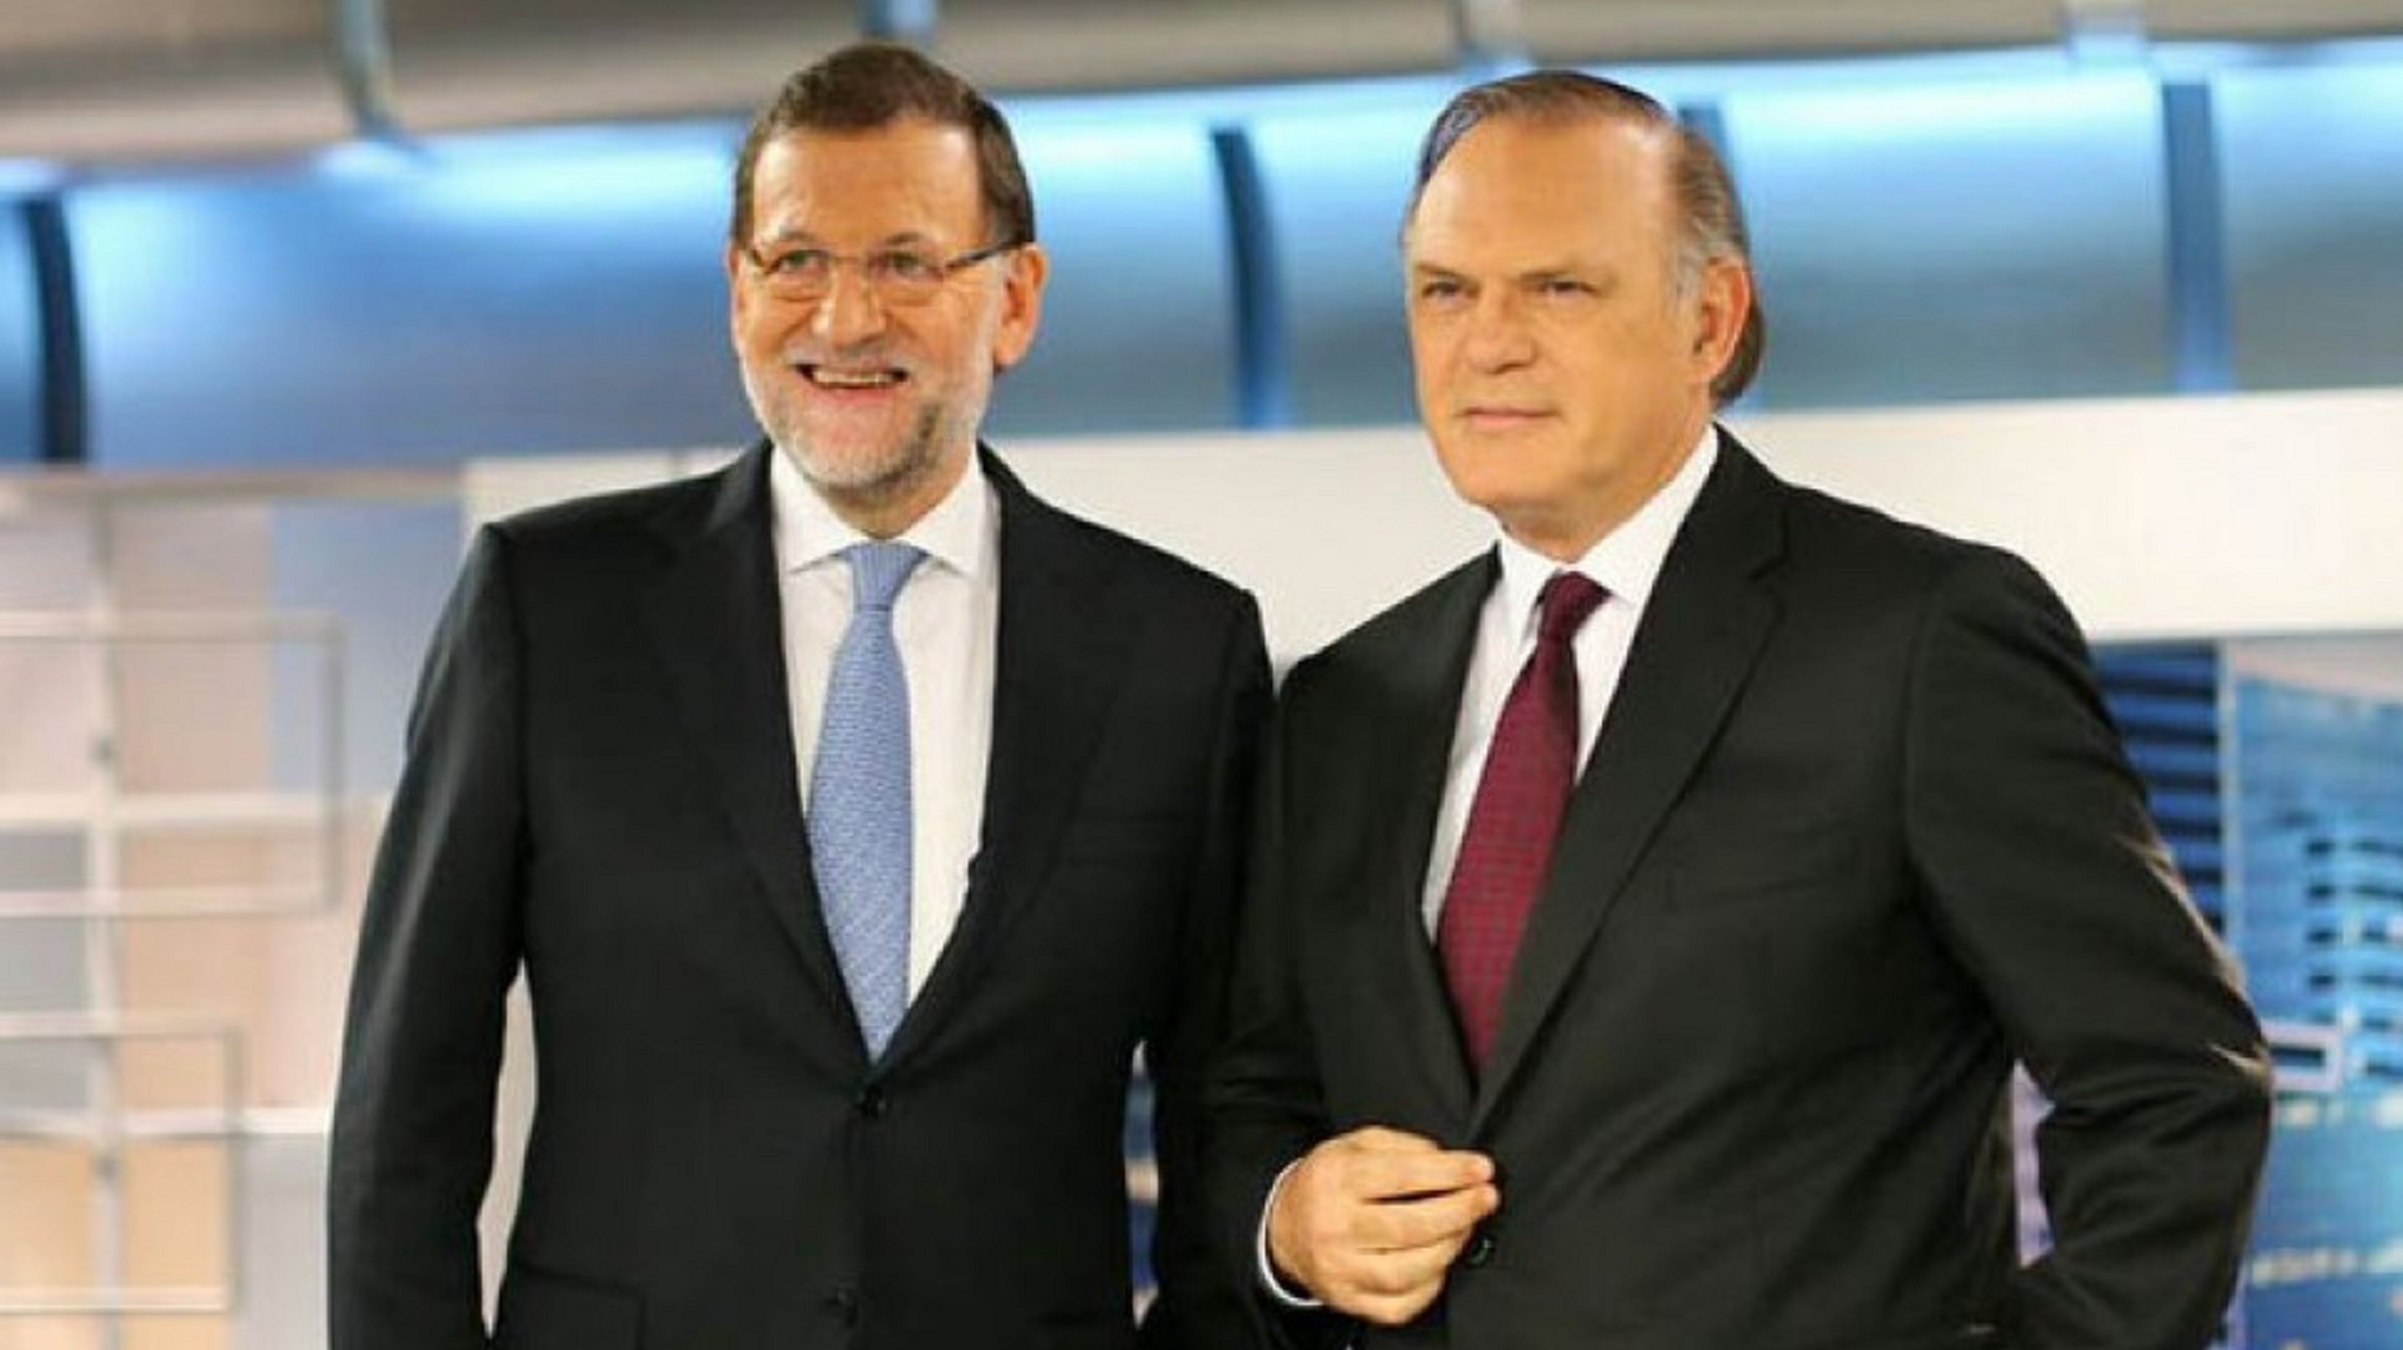 Critican Piqueras al hacer una entrevista demasiado suave a Rajoy